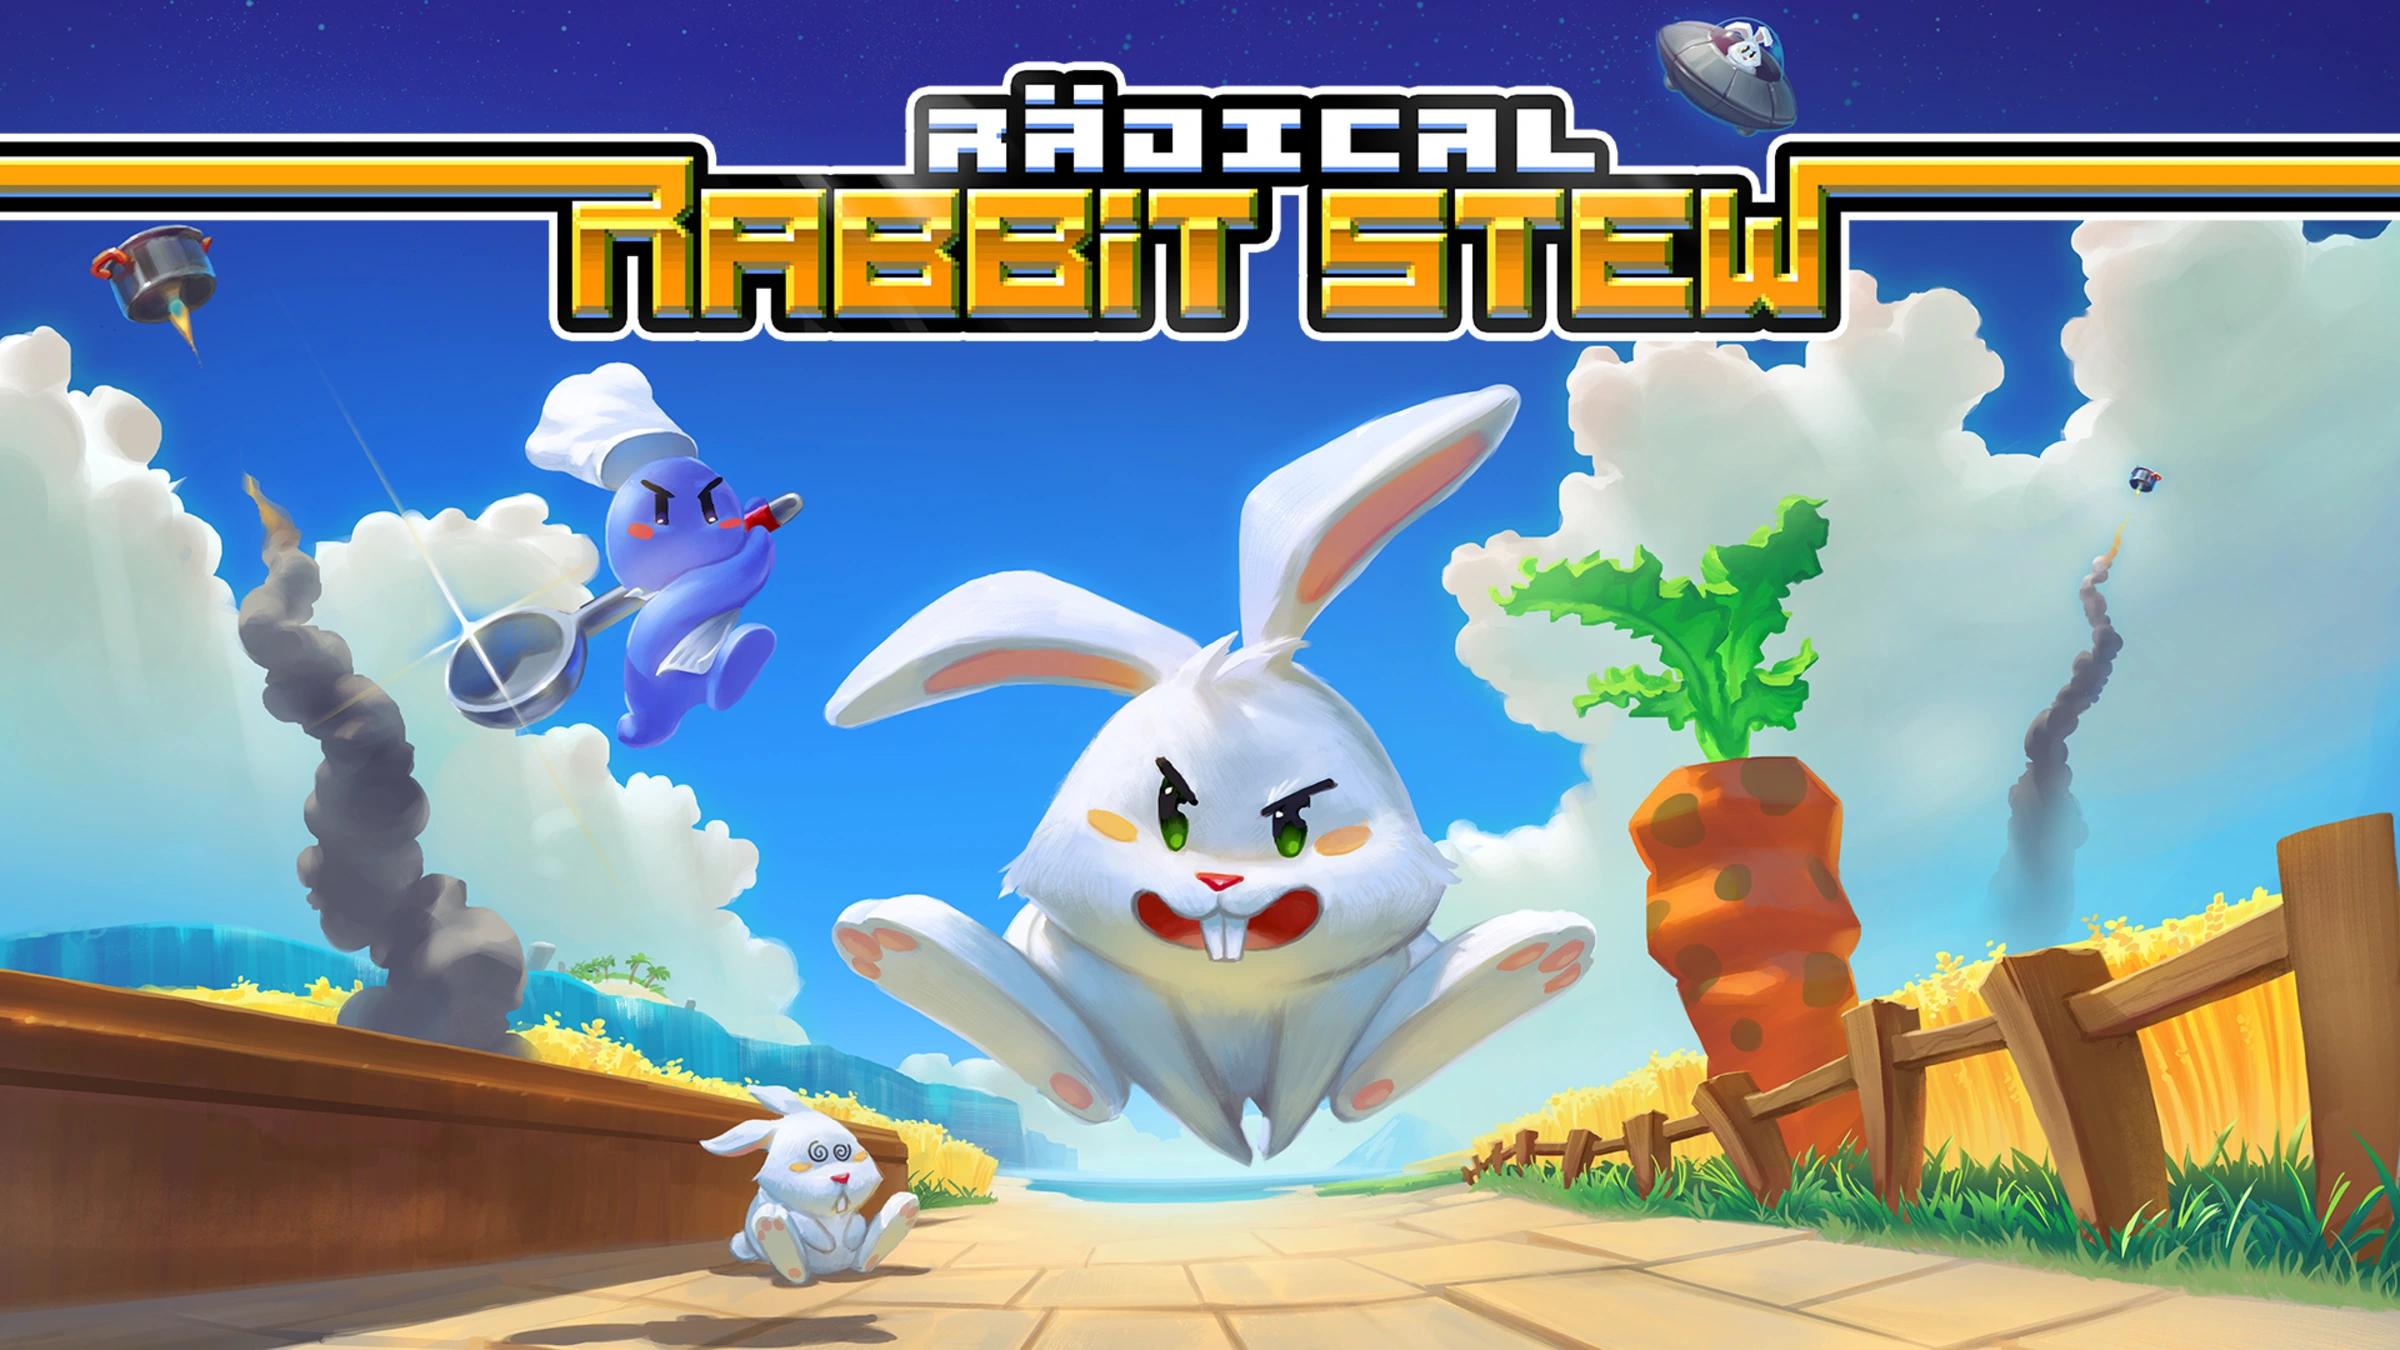 rabbit juego - Cómo se llama el juego del conejo